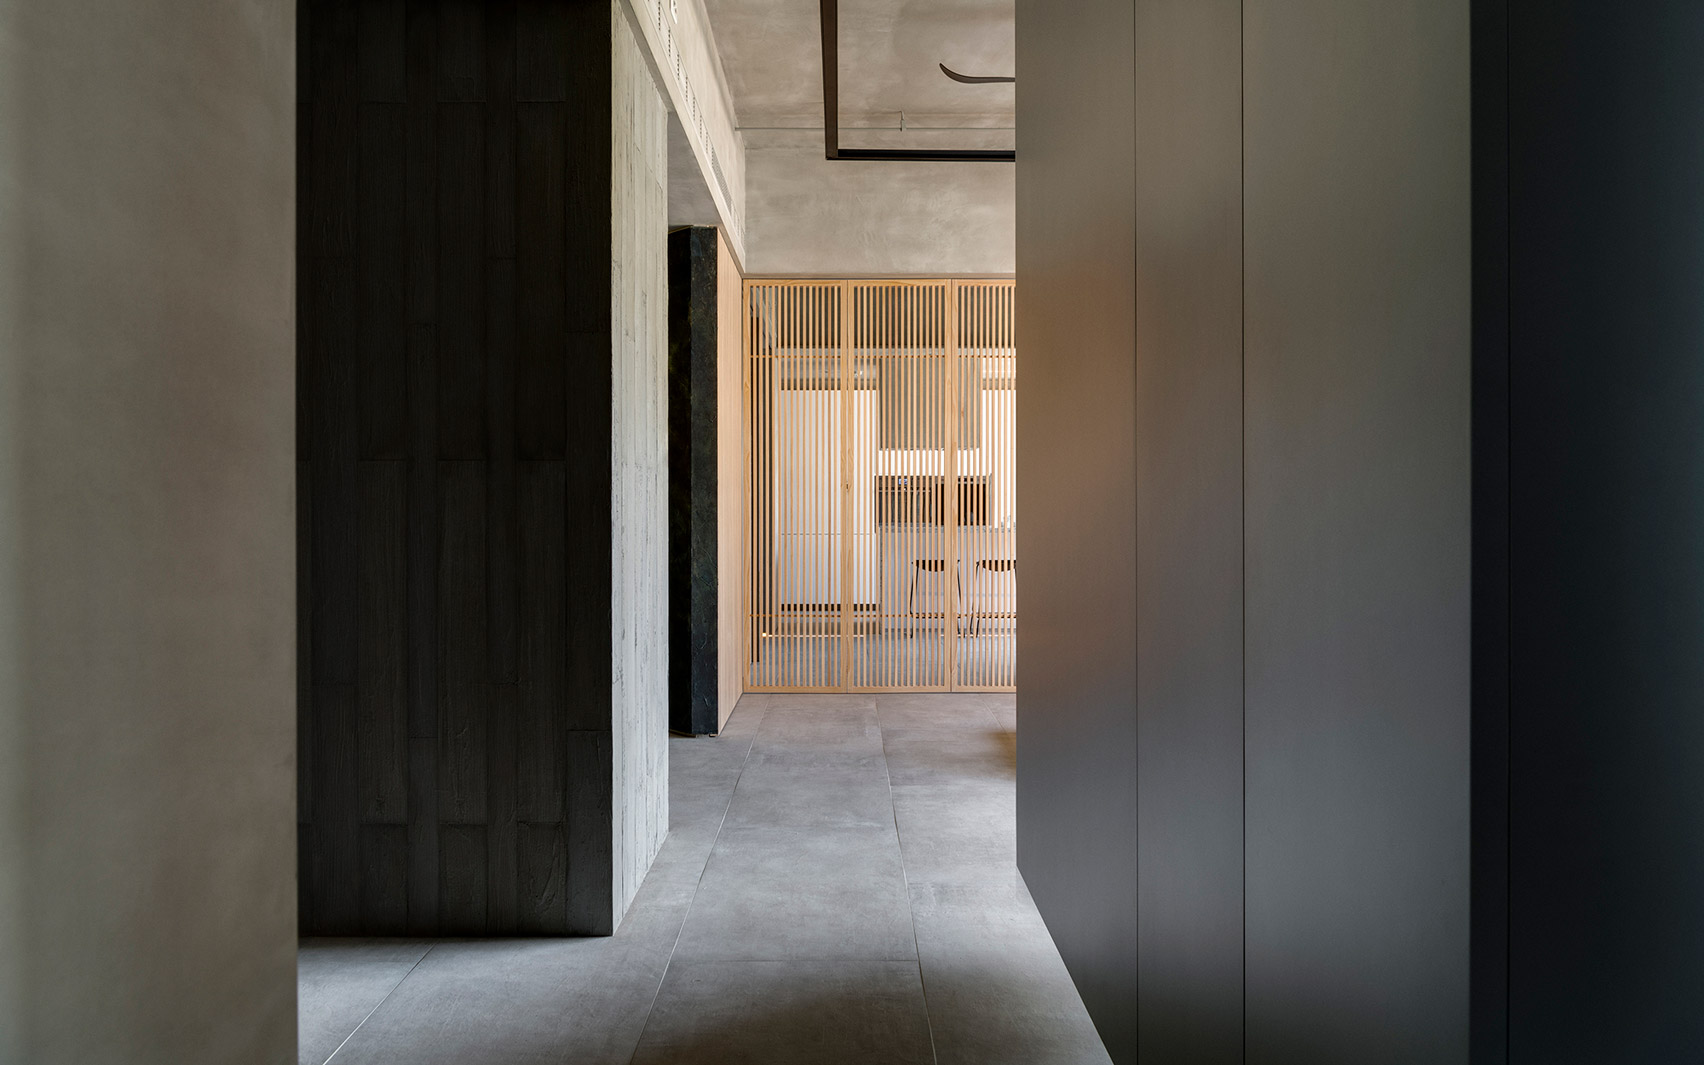 Din-a-ka apartment by Wei Yi International Design Associates